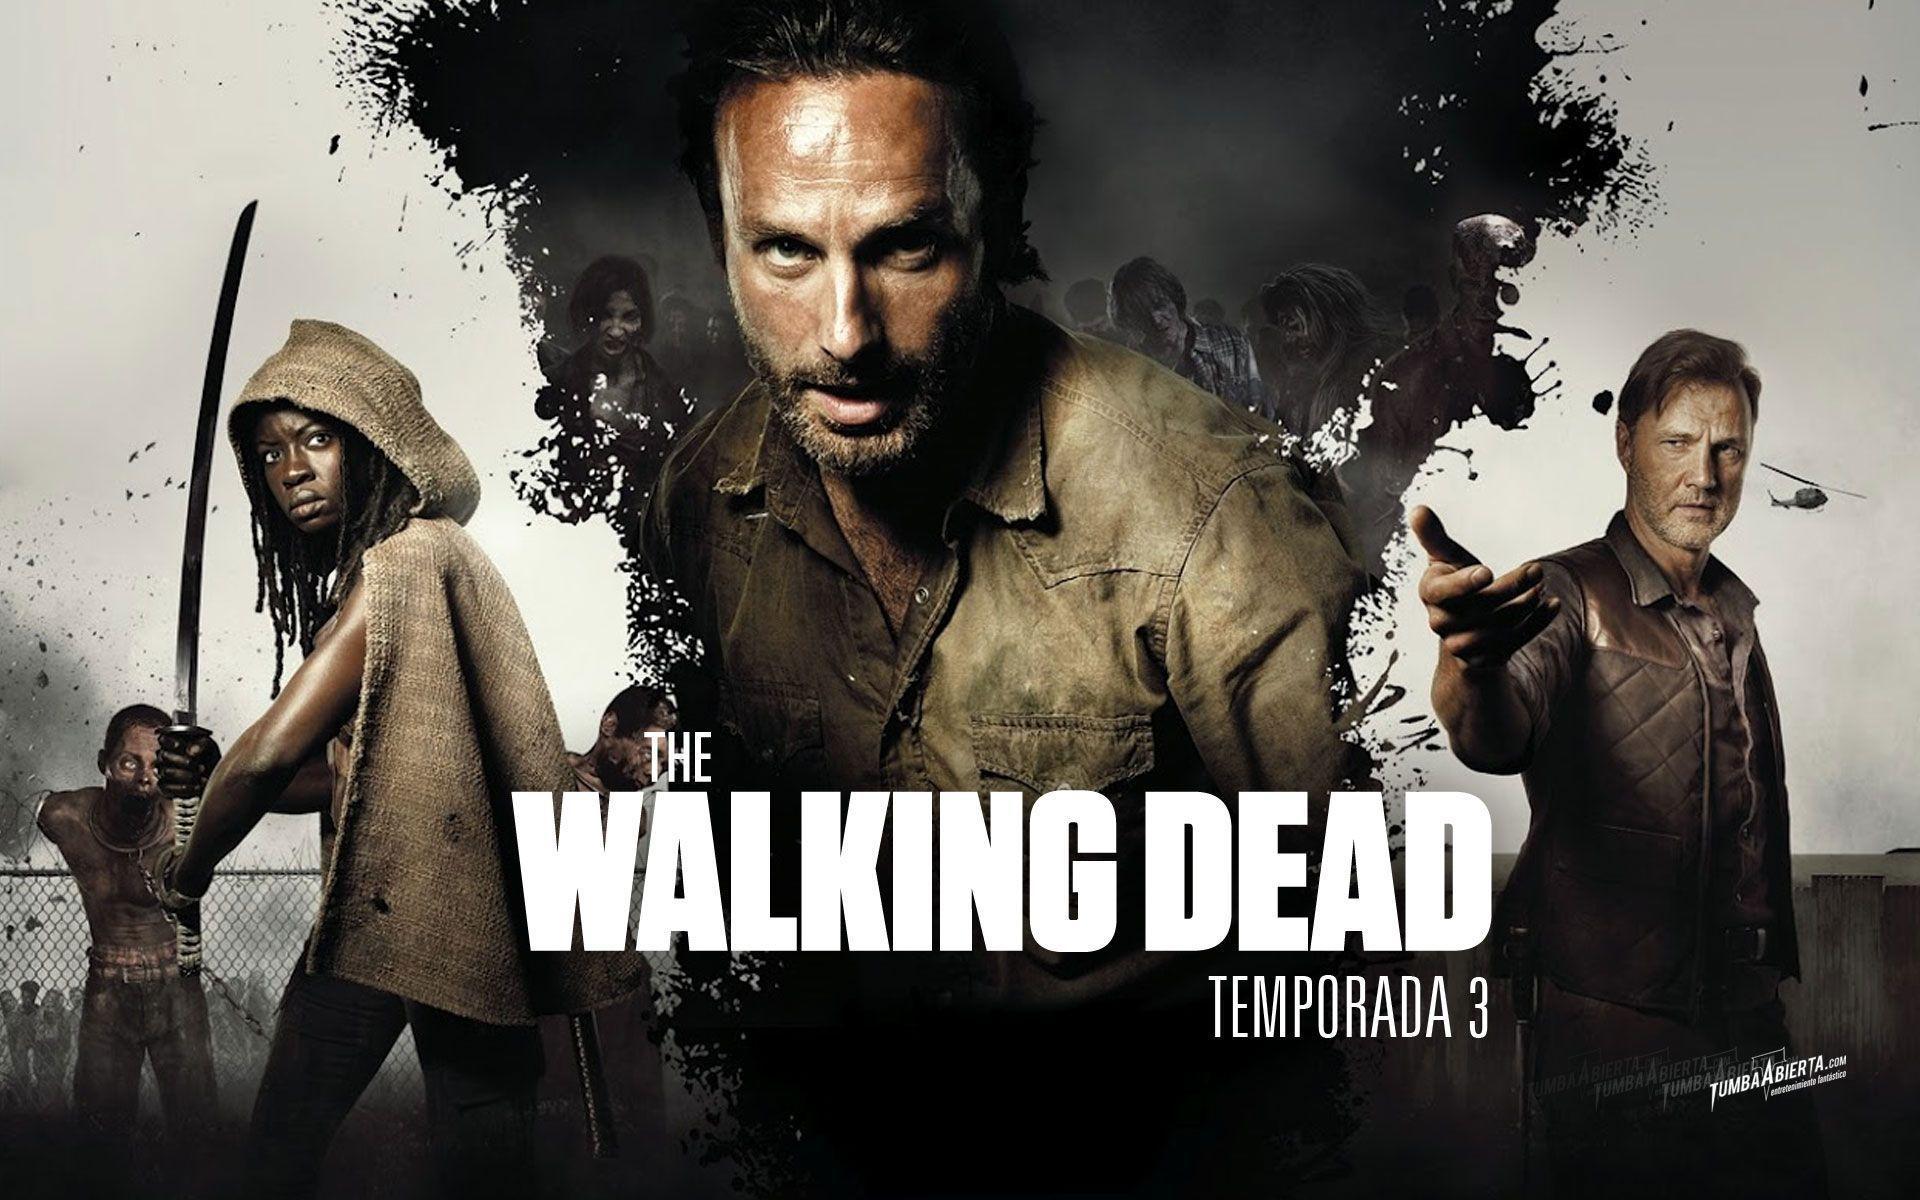 The Walking Dead : Fondos/Wallpapers [HD]